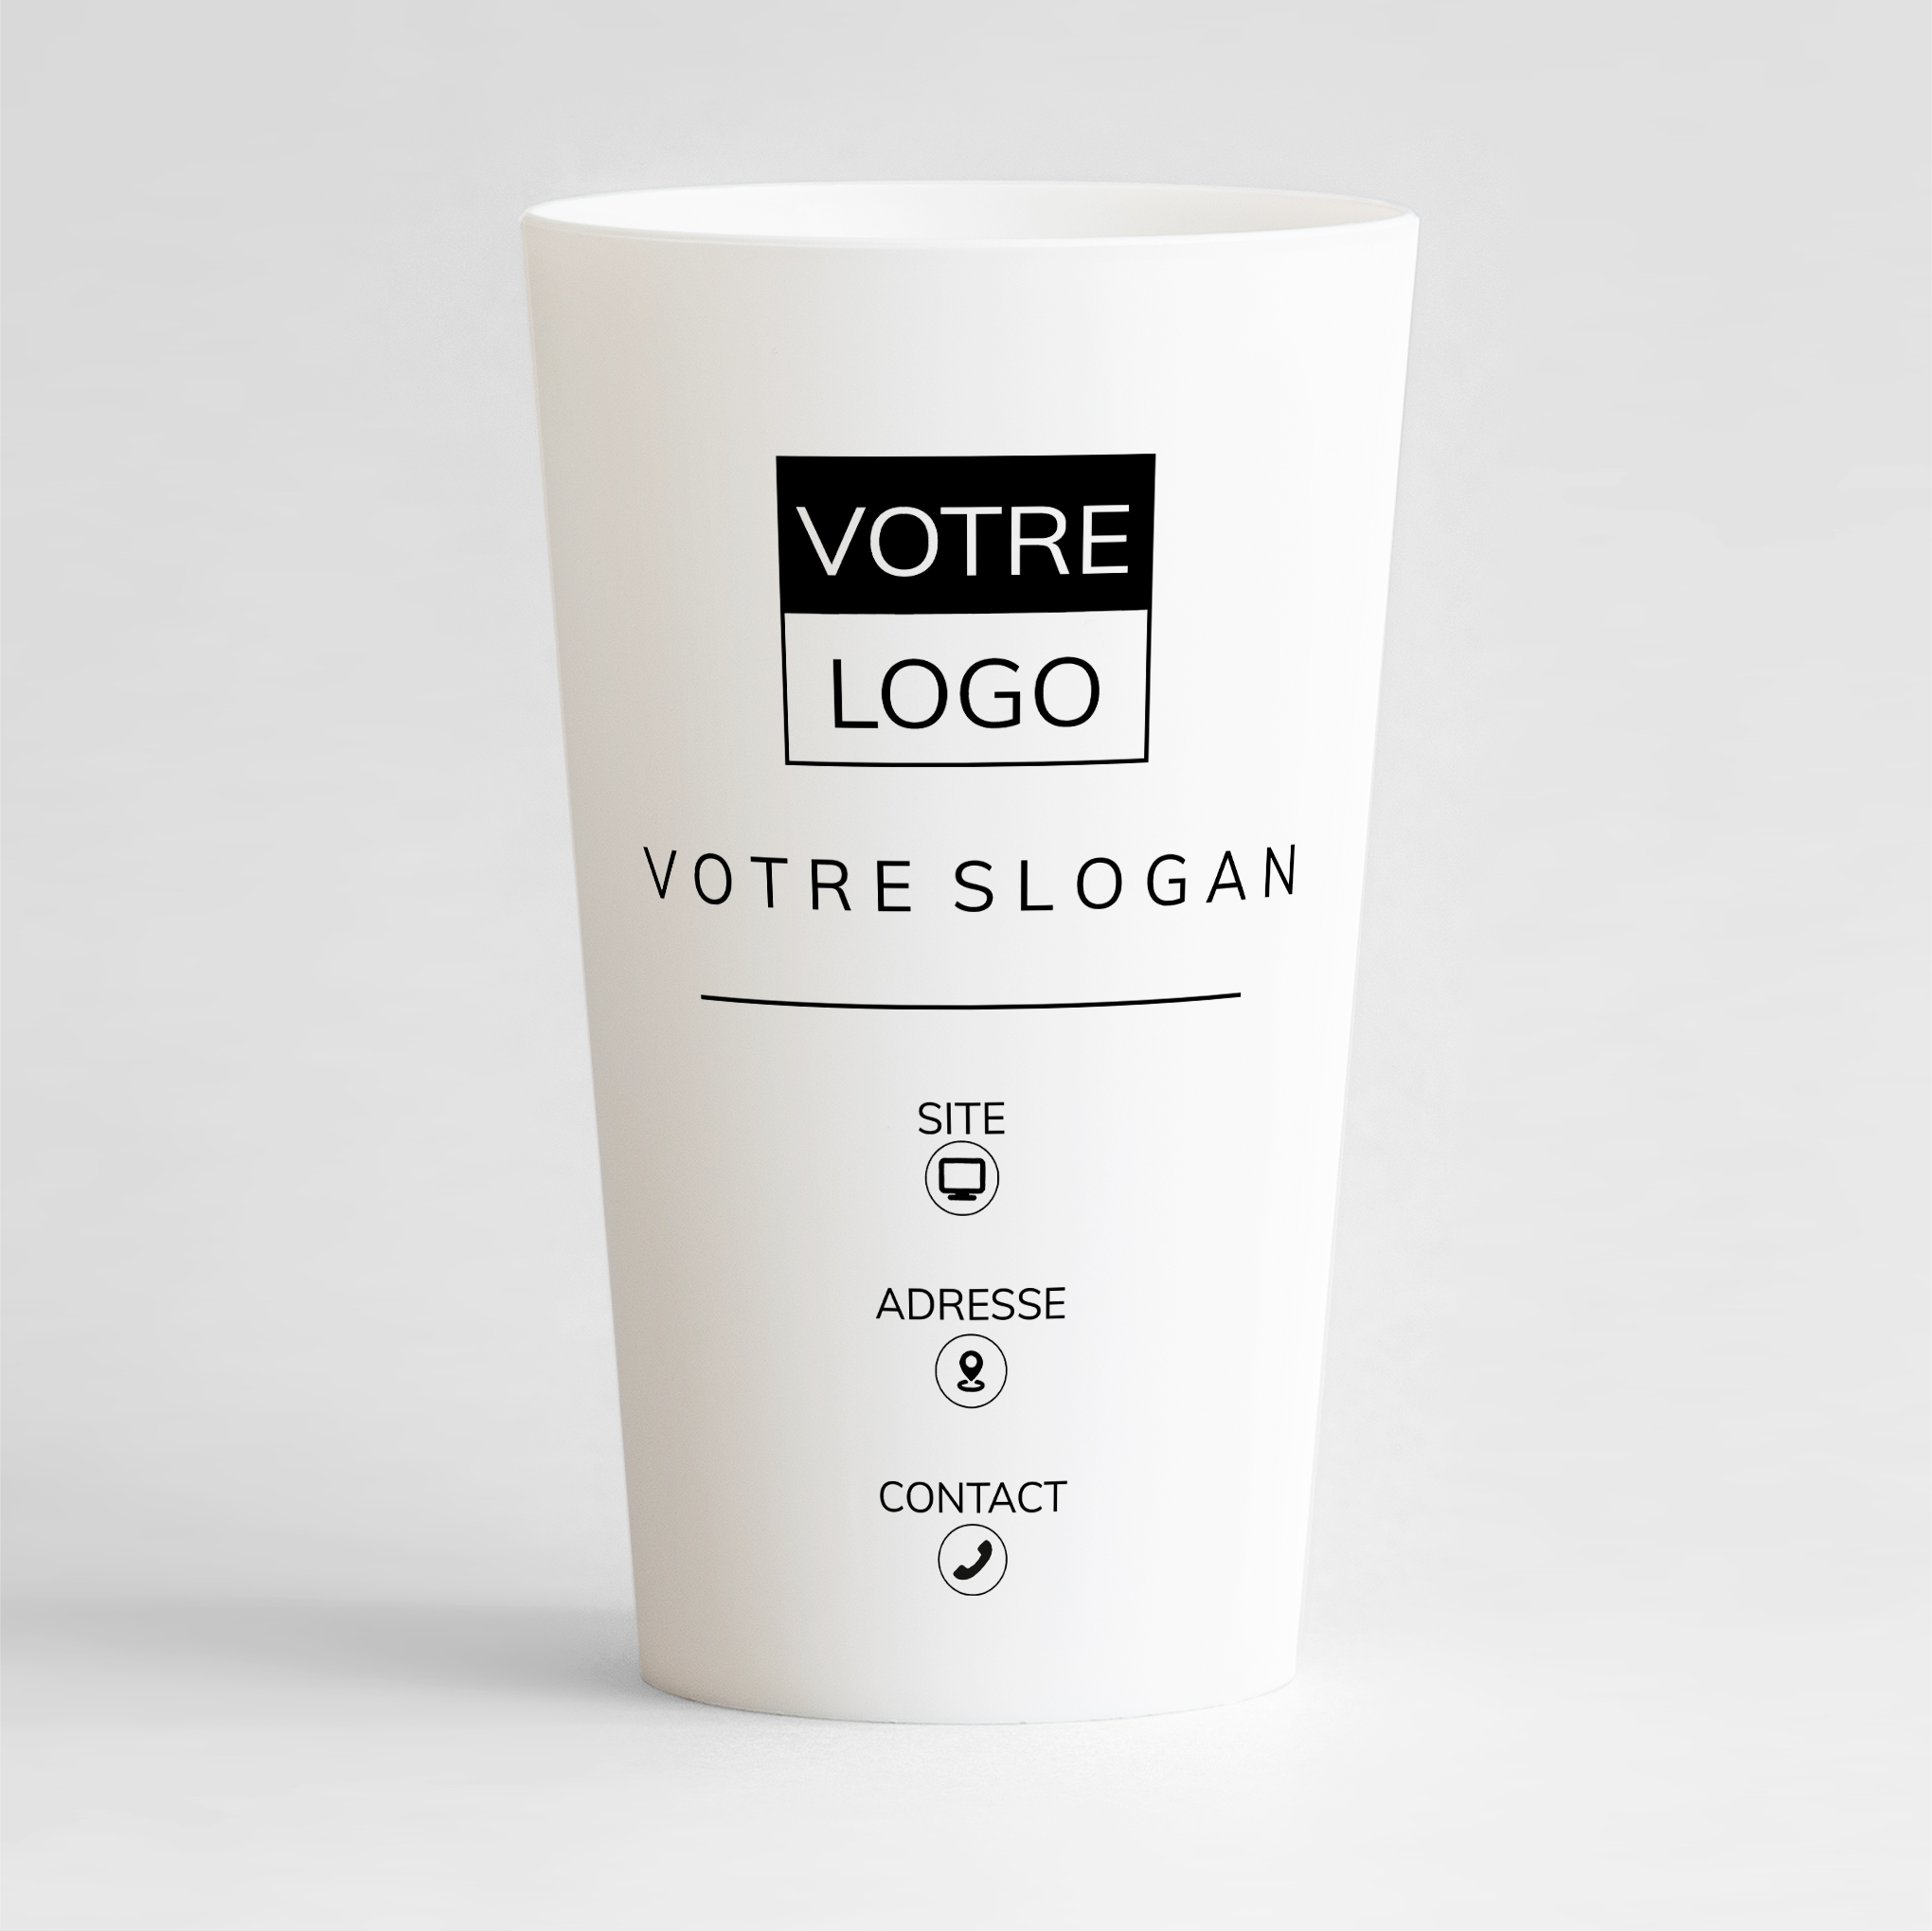 Un ecocup blanc de face à personnaliser pour votre entreprise avec logo, slogan et contacts design.